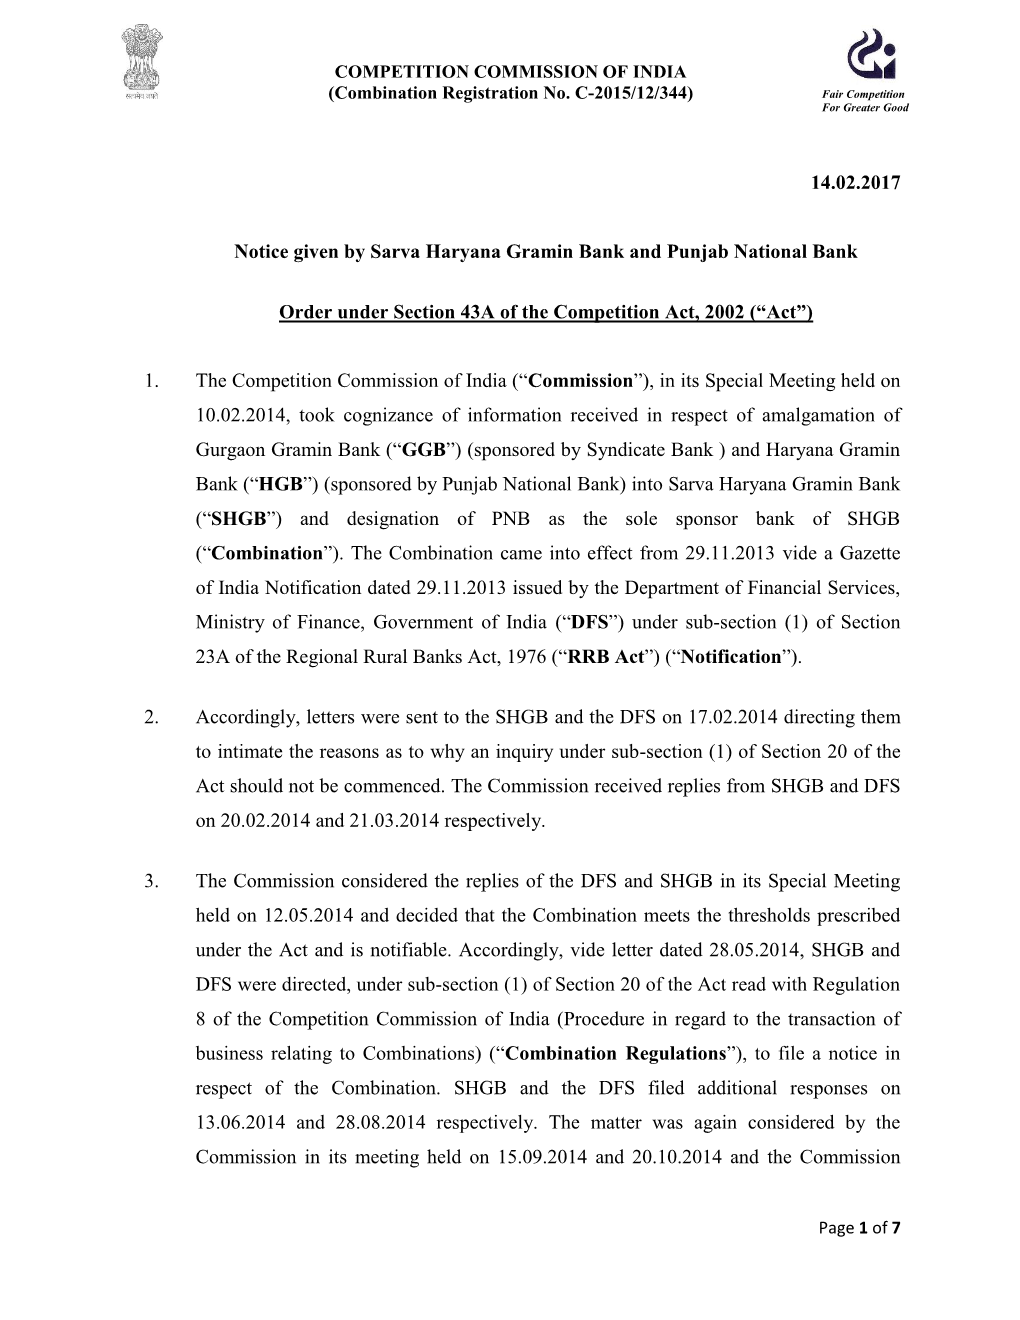 14.02.2017 Notice Given by Sarva Haryana Gramin Bank and Punjab